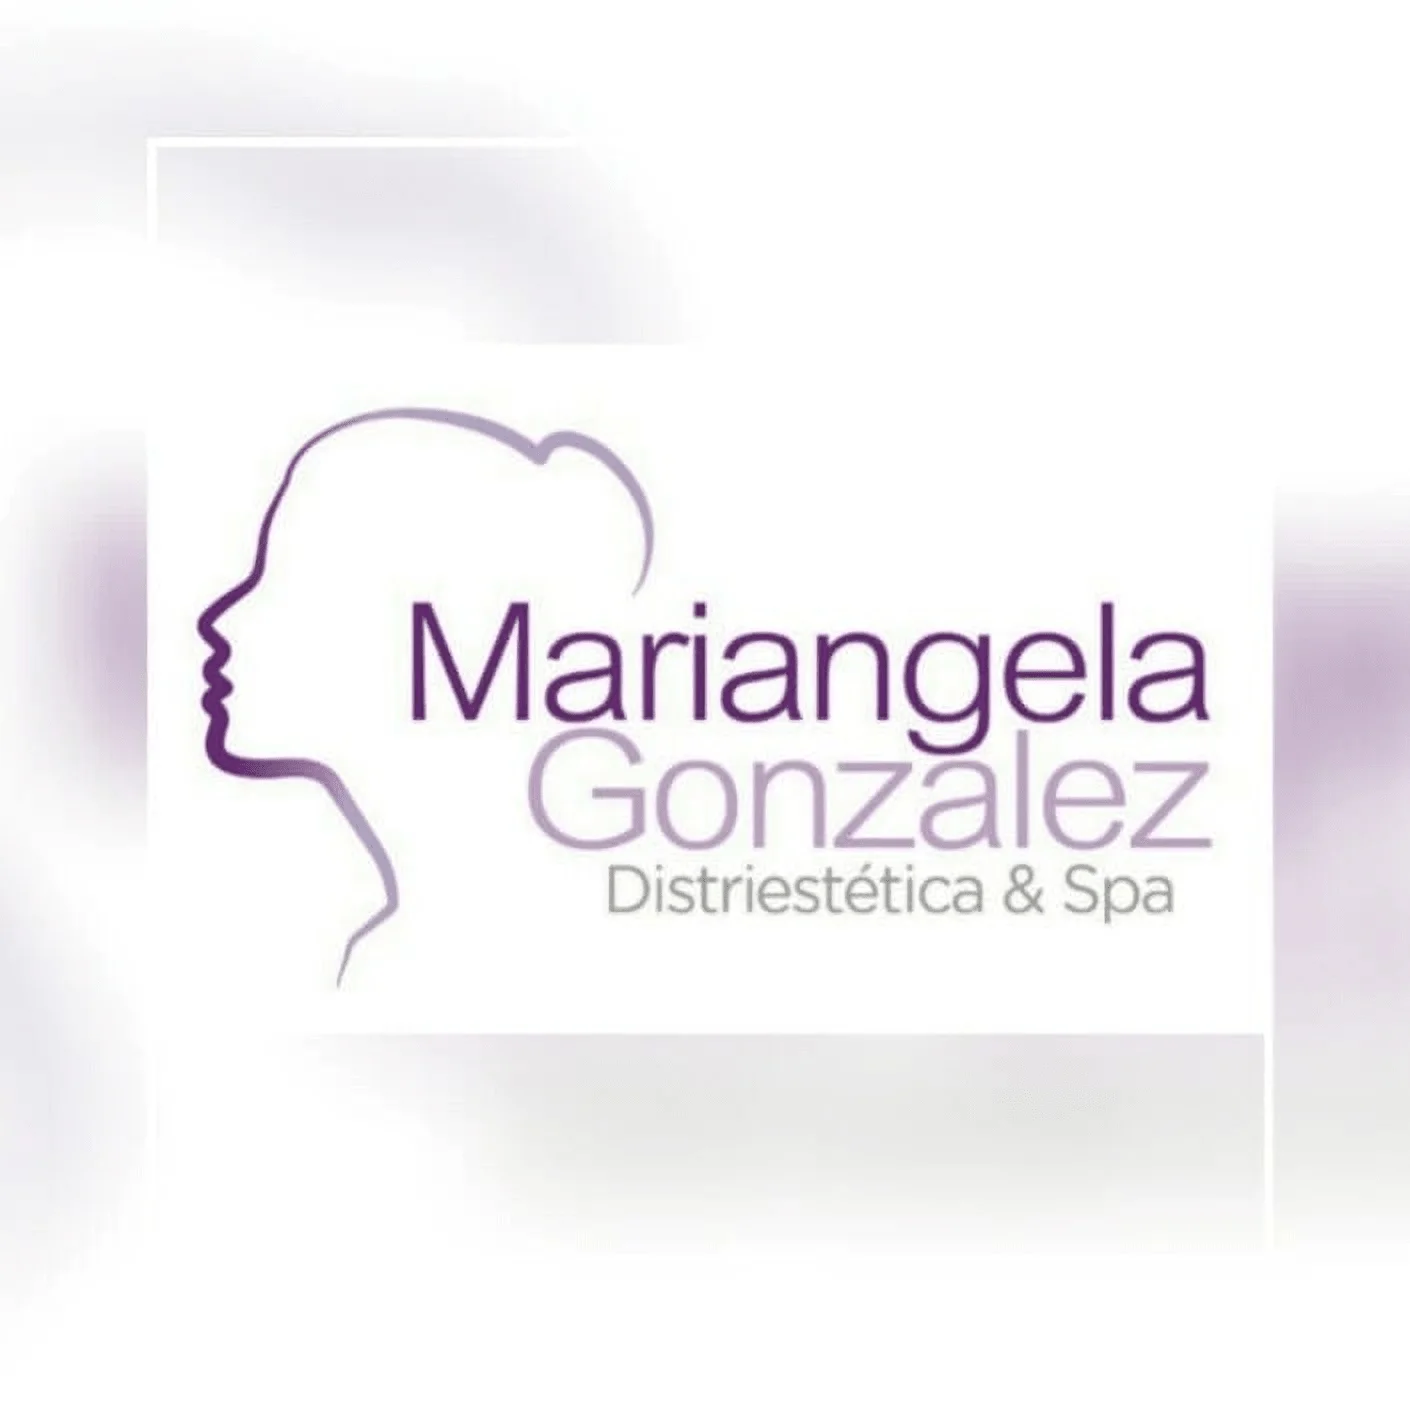 Spa-distriestetica-spa-mariangela-gonzalez-11668